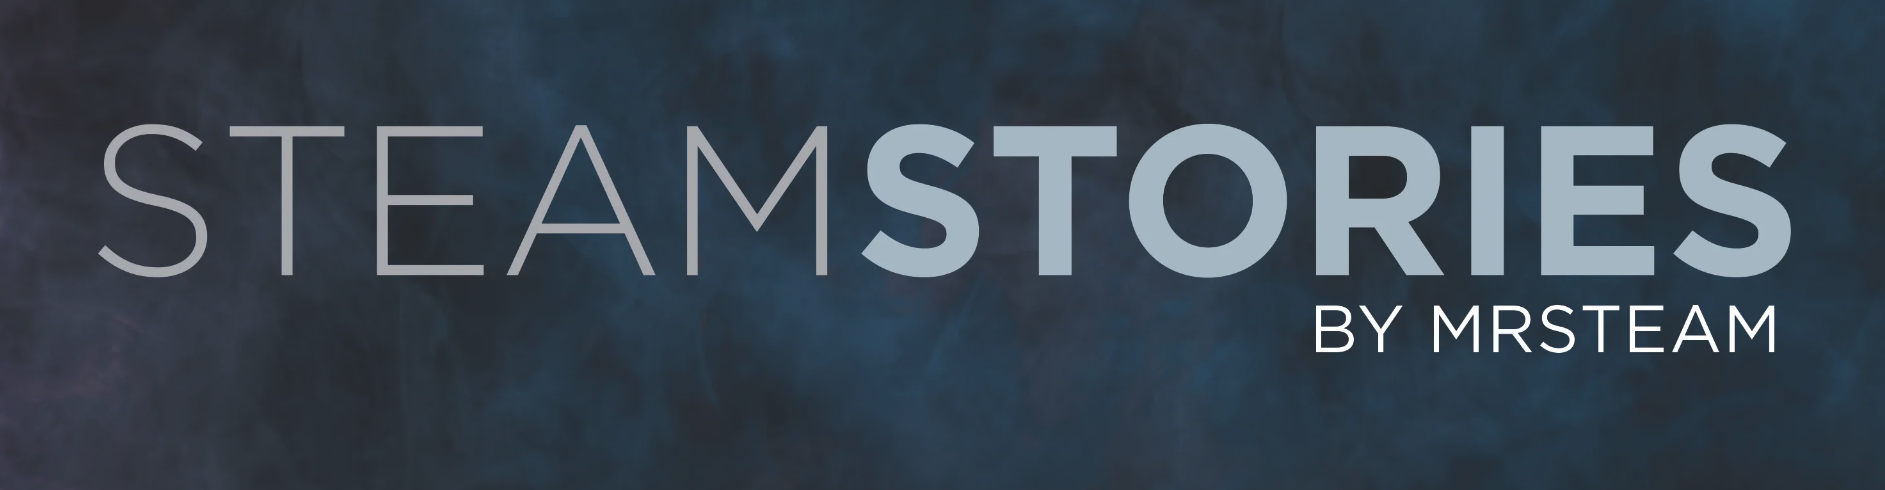 LG2_Steamstories logo